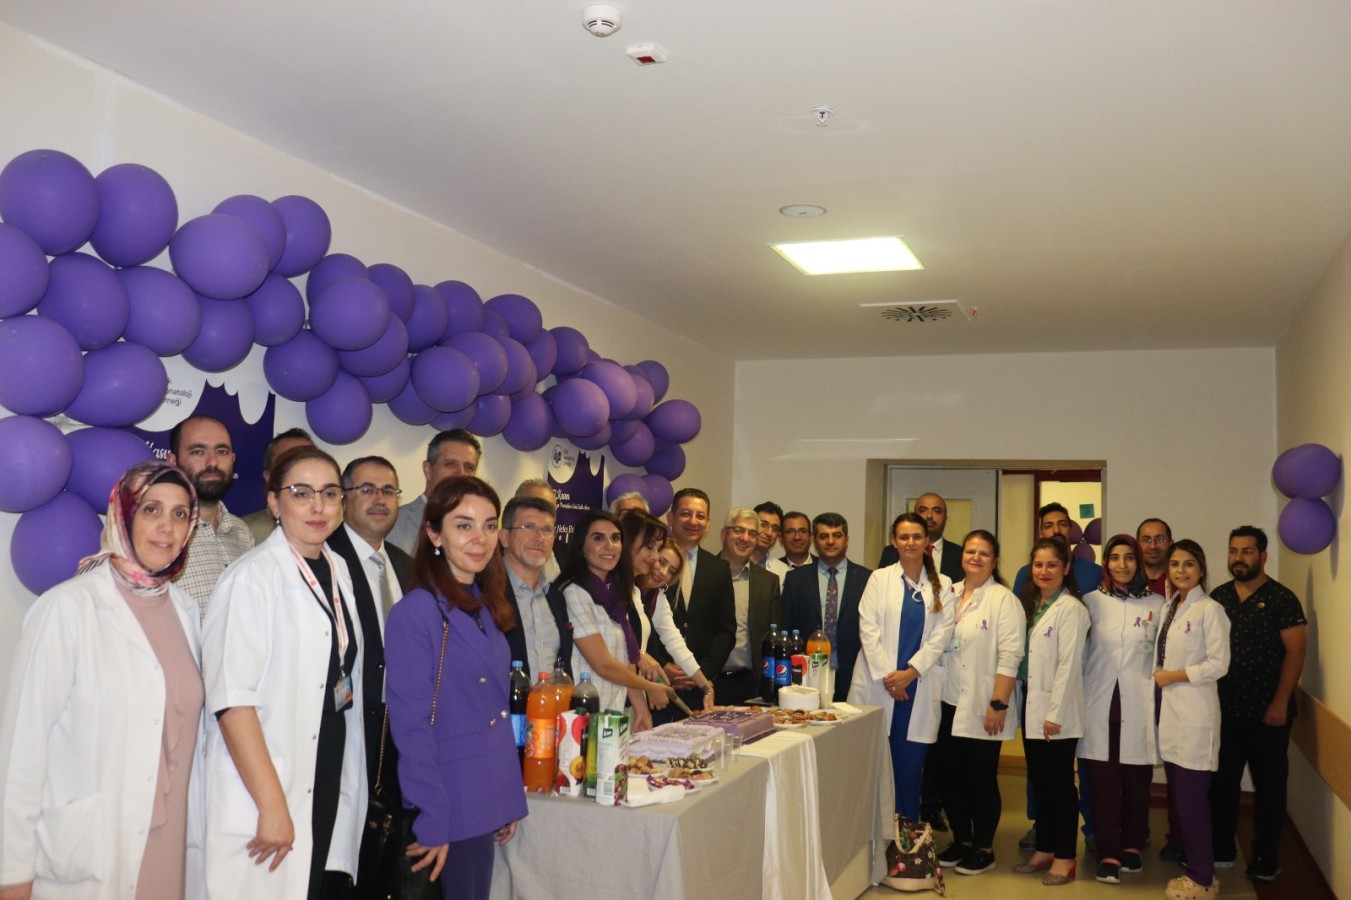 Harran Üniversitesi yenidoğan servisi, prematüre bebekler için umut kapısı;